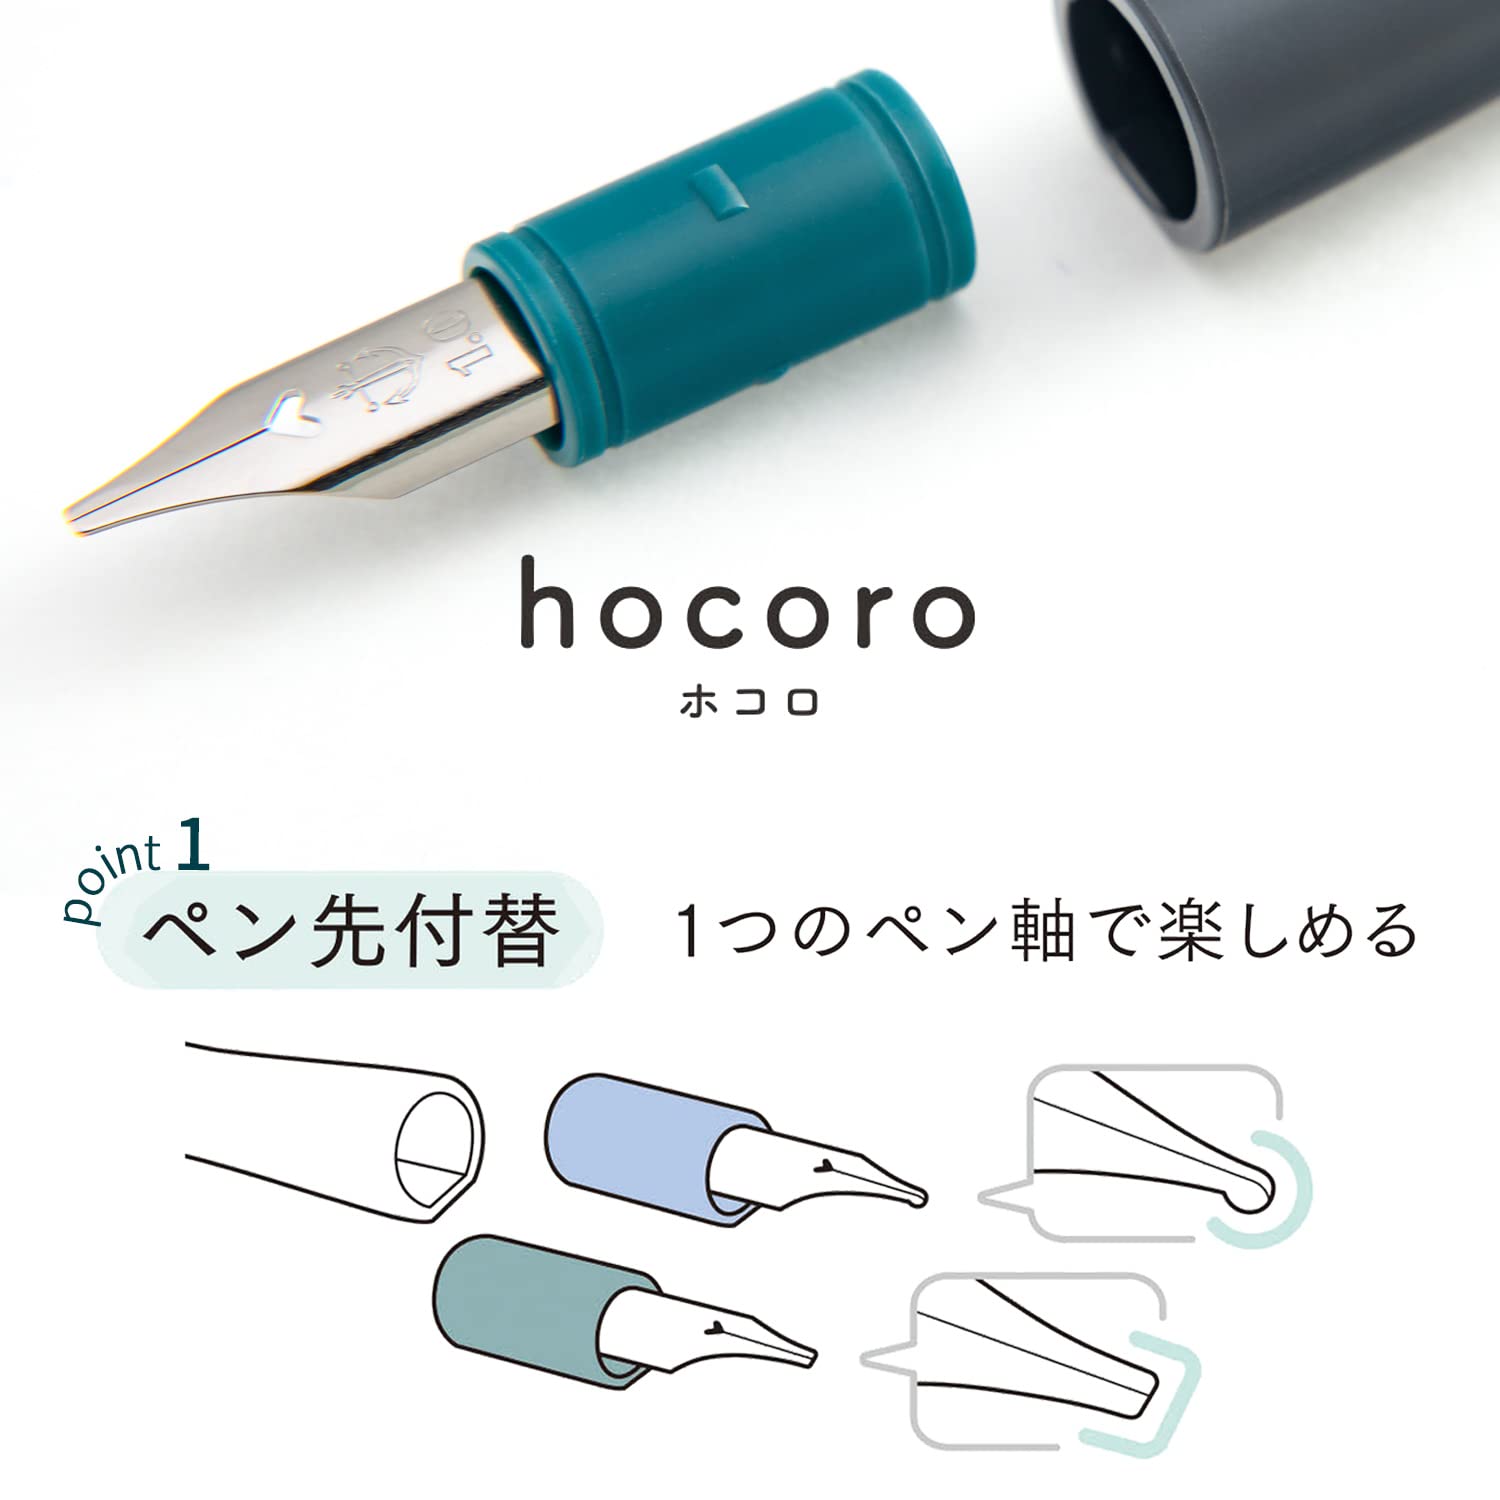 Sailor Hocoro Dip Fountain Pen w/ Extra Nibs